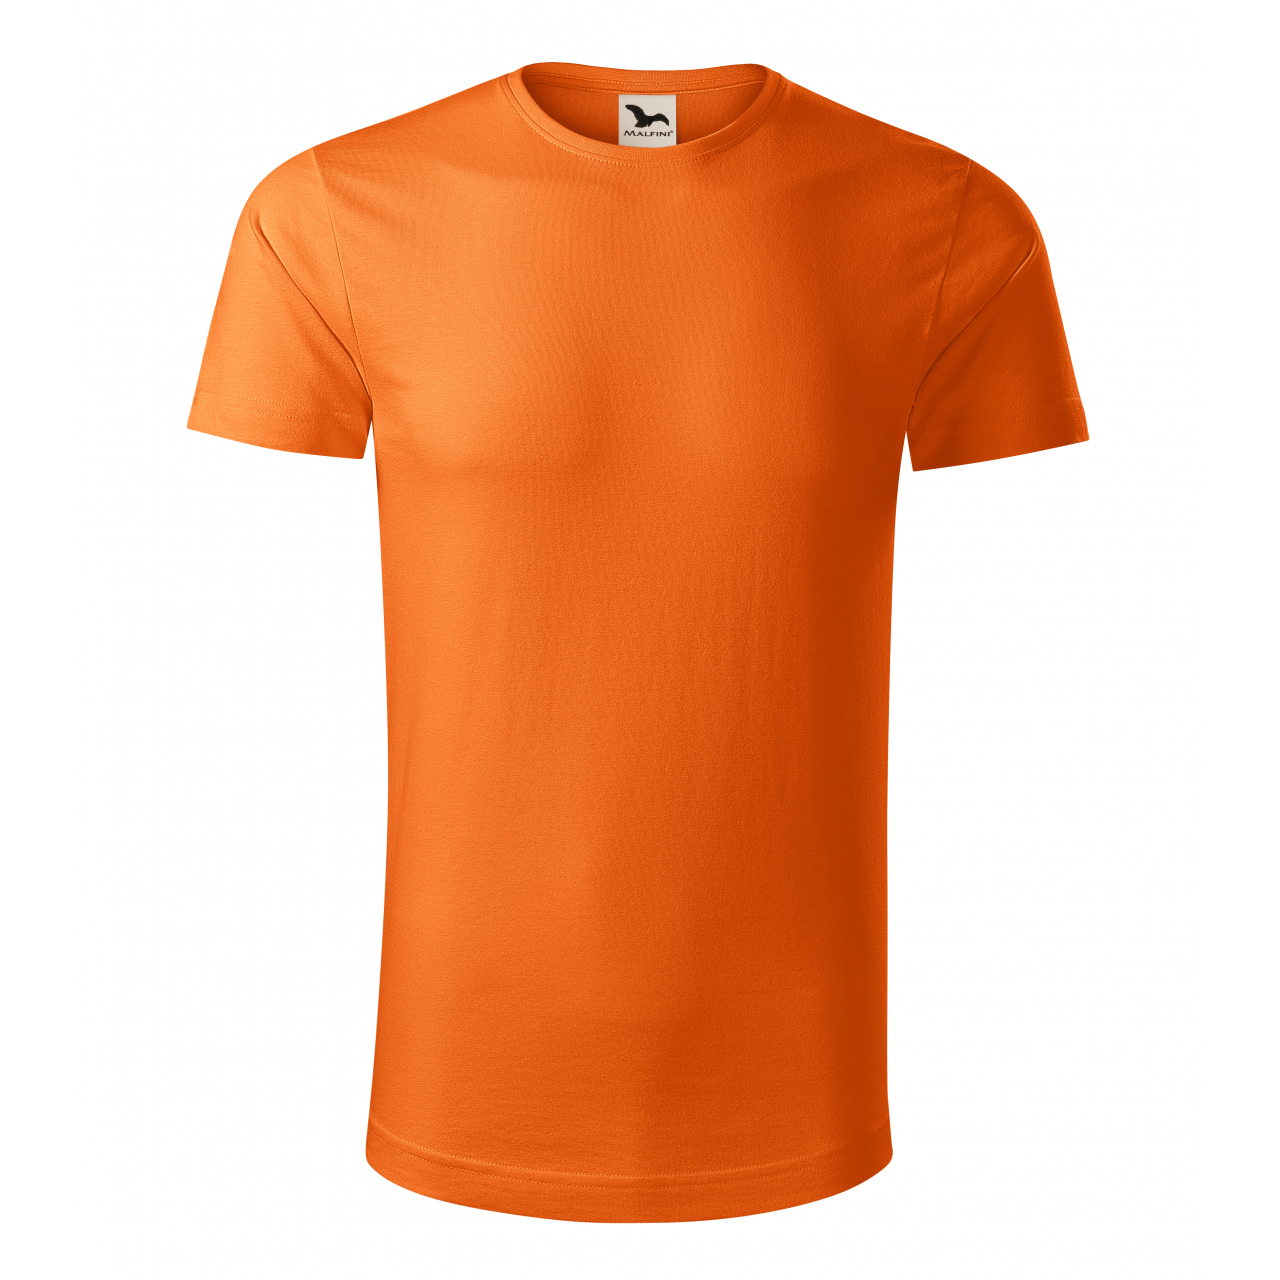 Tričko pánské Malfini Origin - oranžové, M